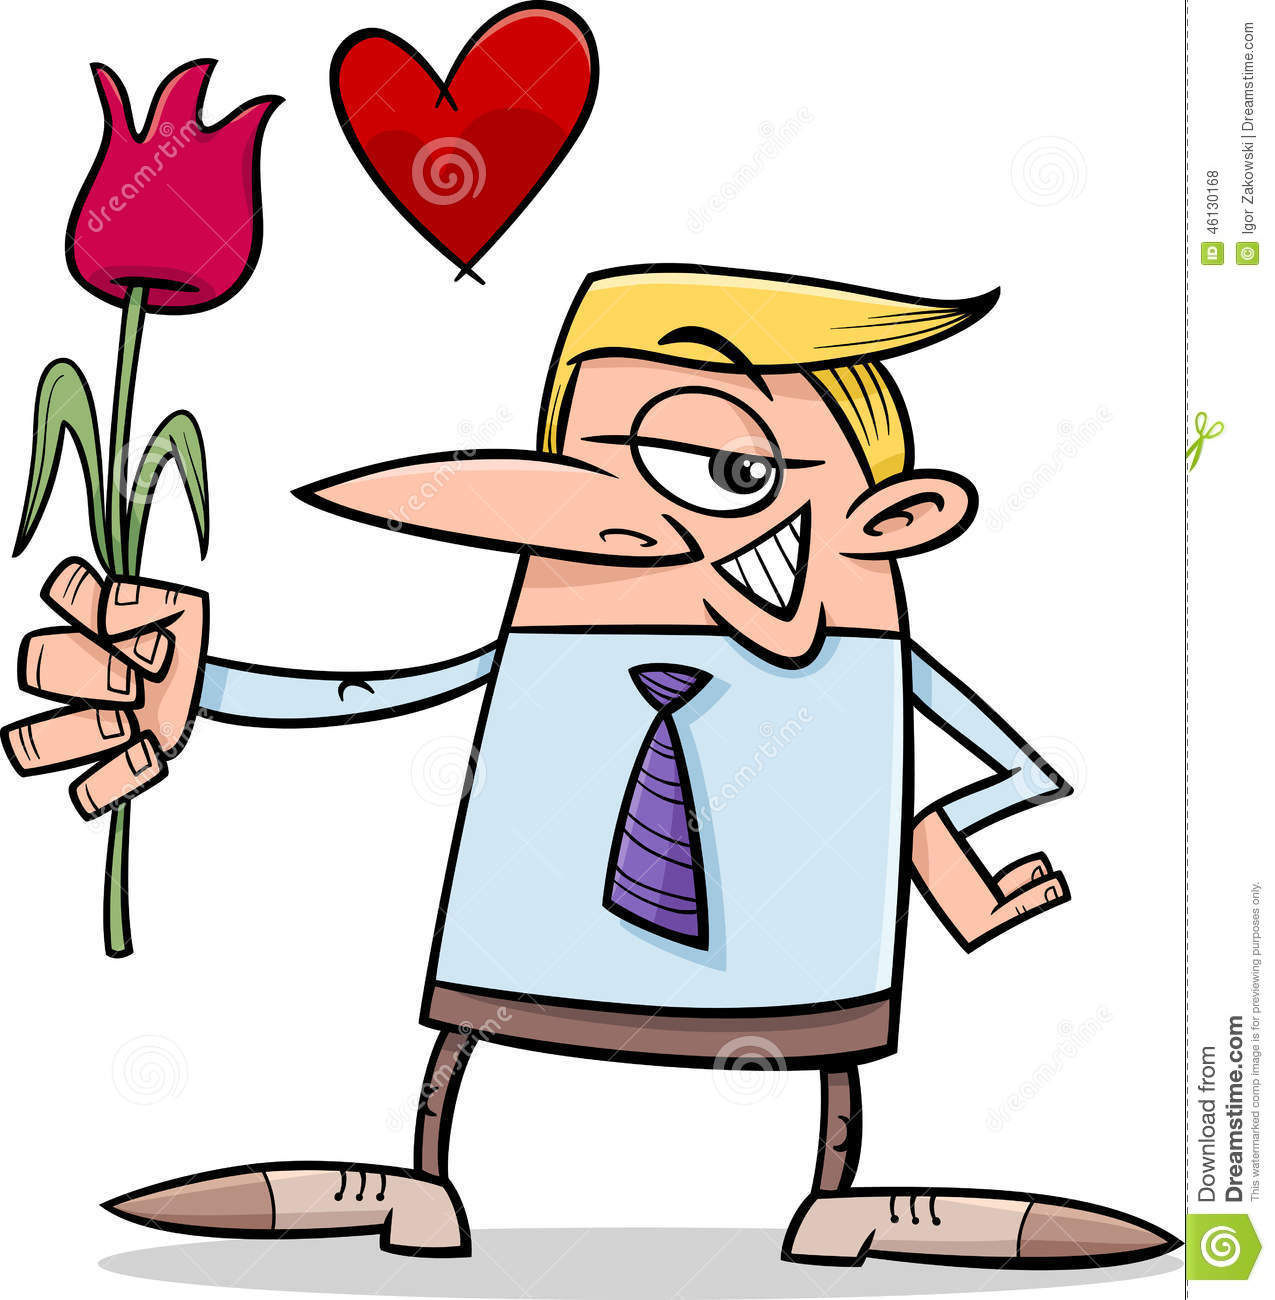 man-love-cartoon-illustration-funny-flower-46130168.jpg